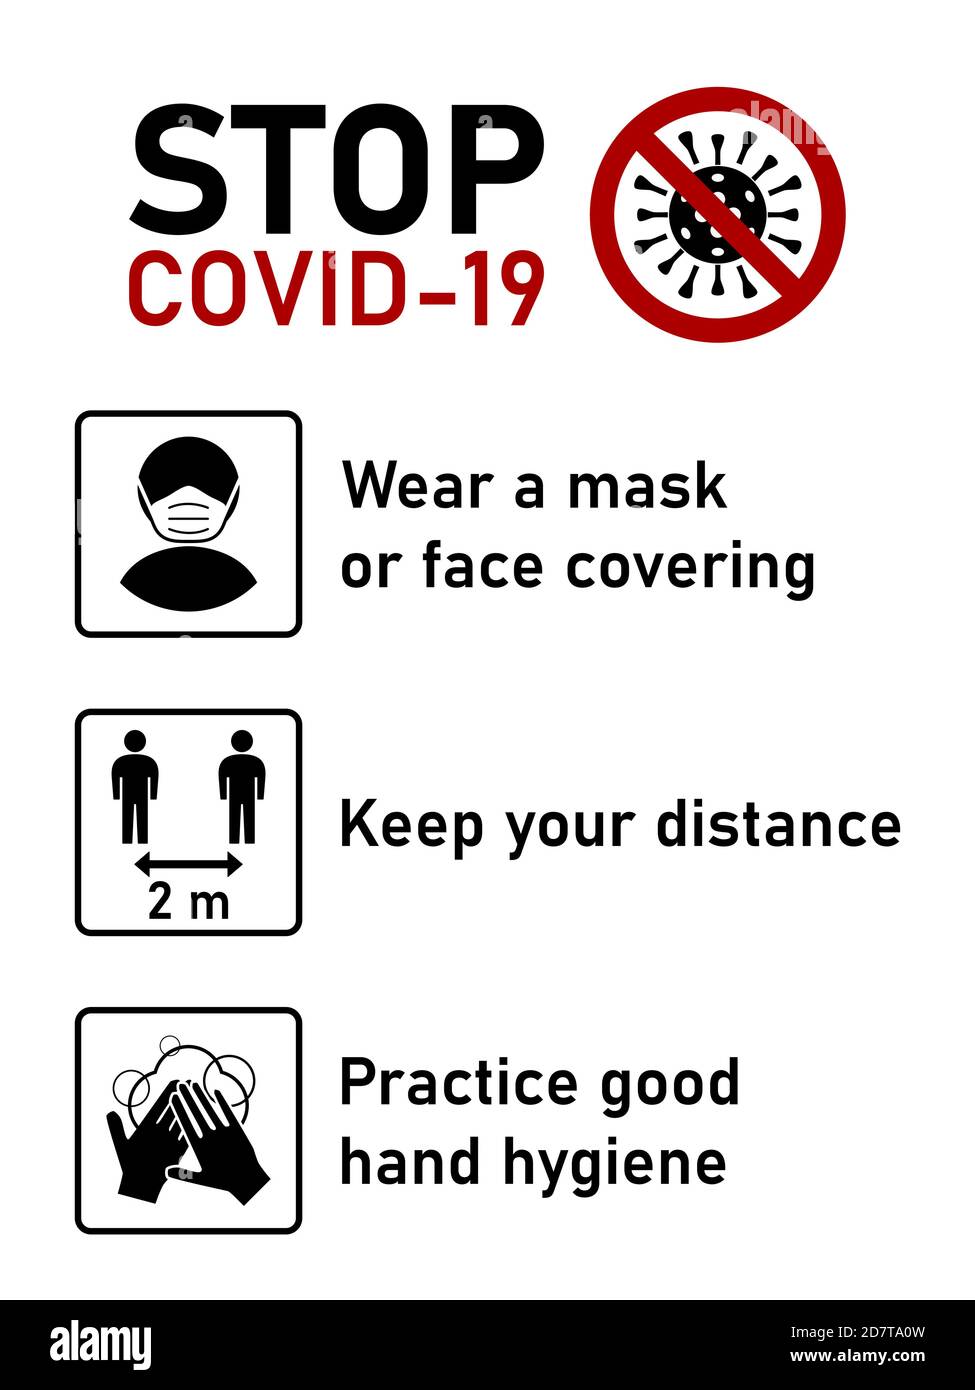 Stop Covid-19 jeu de règles du coronavirus comprenant porter un masque ou une couverture du visage, garder votre distance de 2 mètres et pratiquer une bonne hygiène des mains. Image vectorielle. Illustration de Vecteur